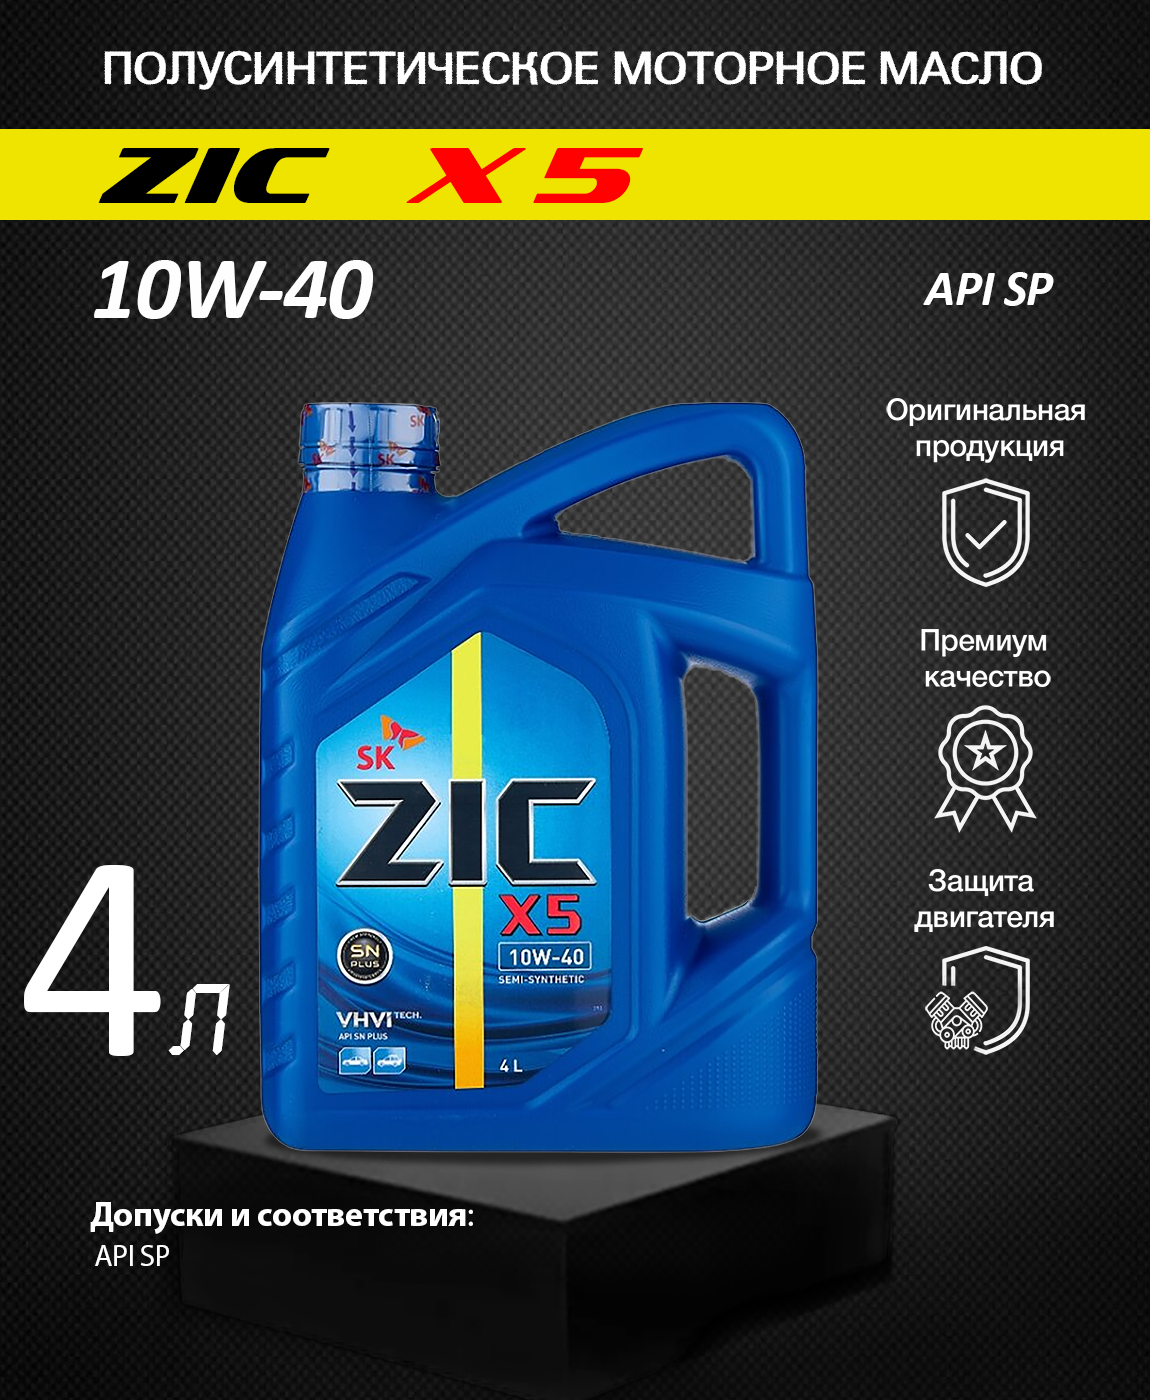 Полусинтетическое масло zic. Зик 10w 40 полусинтетика. Автомасла ZIC 10w 40 синтетика. ZIC 10w 40 4л артикул. Зик 10w 40 артикул.